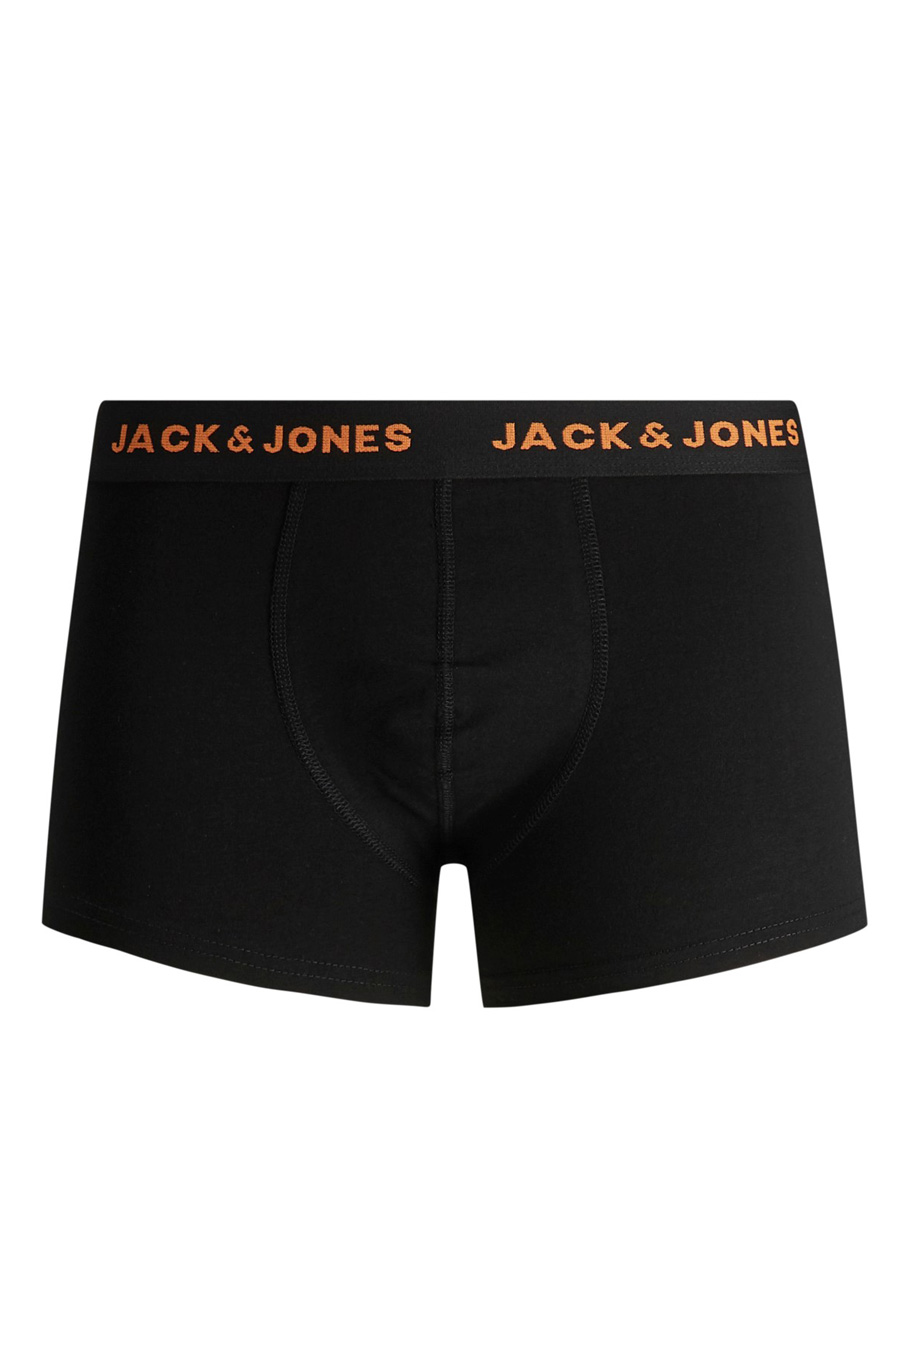 Bokseršorti JACK & JONES 12165587-Black